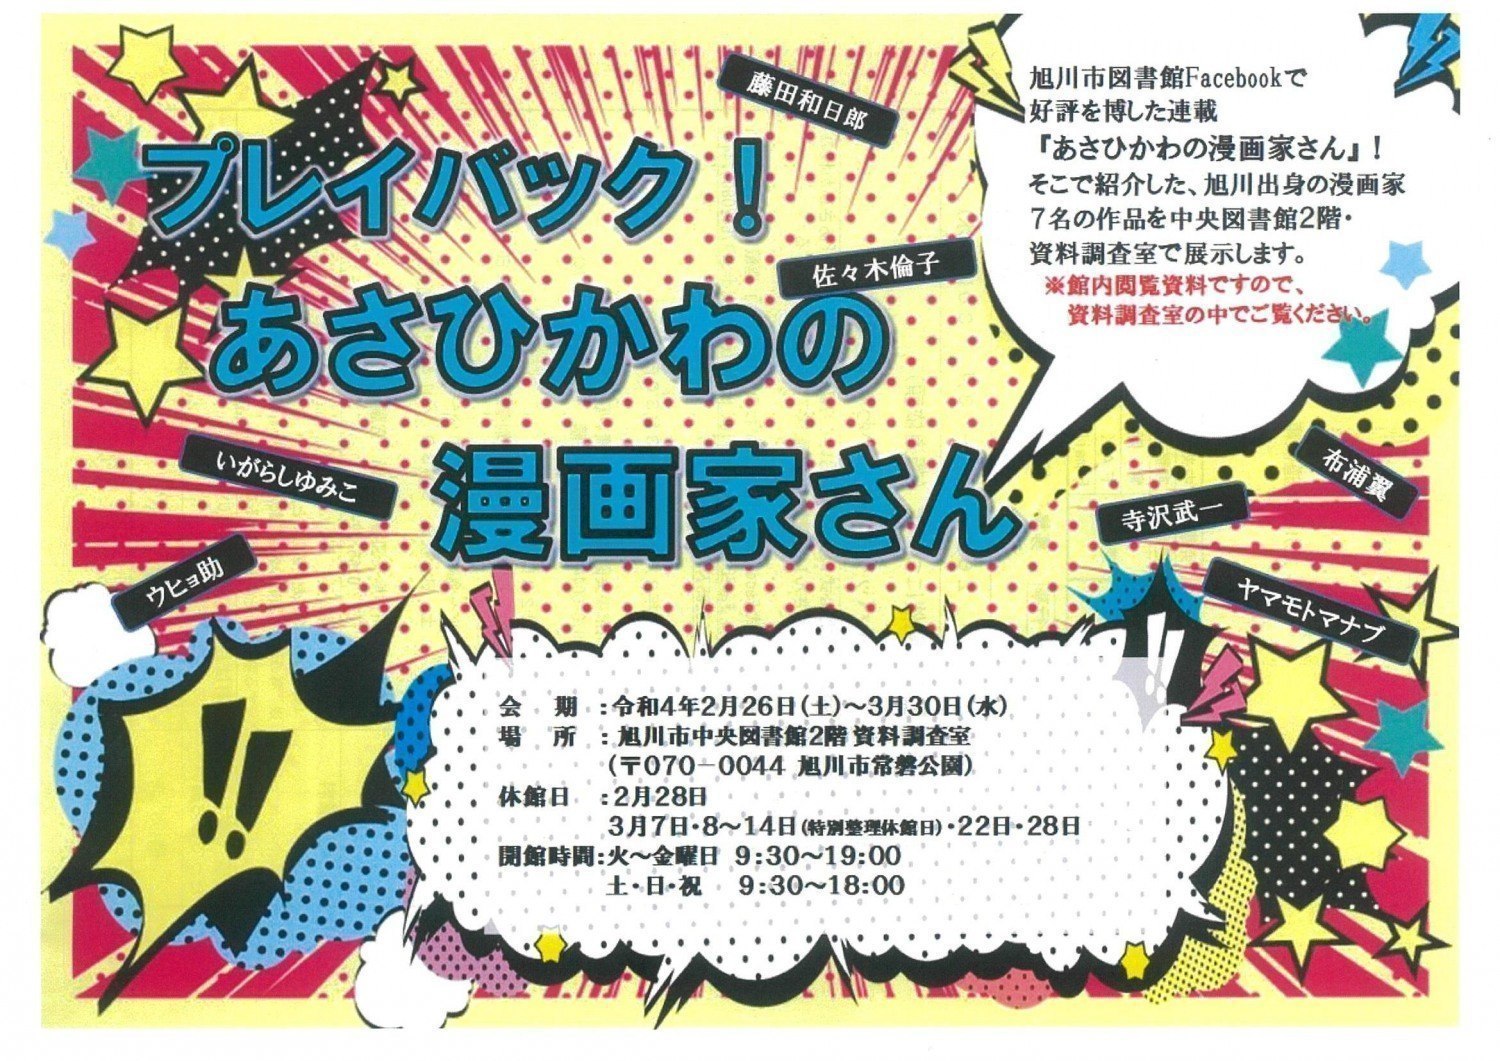 プレイバック あさひかわの漫画家さん 旭川市常磐公園 イベント ライナーウェブ